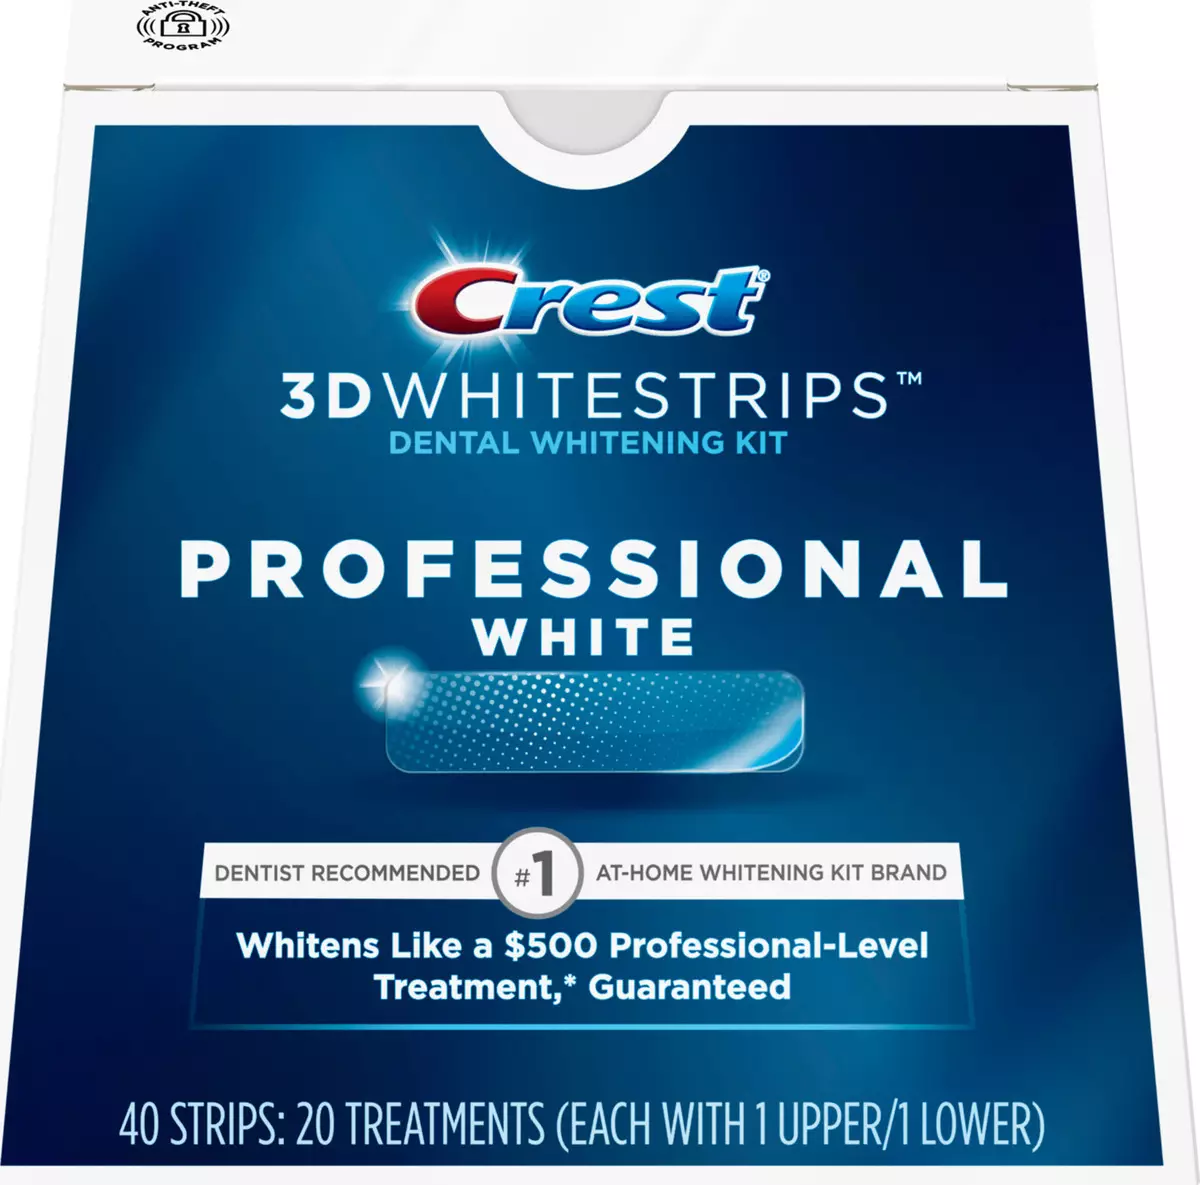 Whiting Strips Crest 3d White: Maitiro ekushandisa ivo kumuchera mazino? Mirayiridzo yeTrapa Whitestrips Professional Mhedzisiro uye Vamwe 16157_20